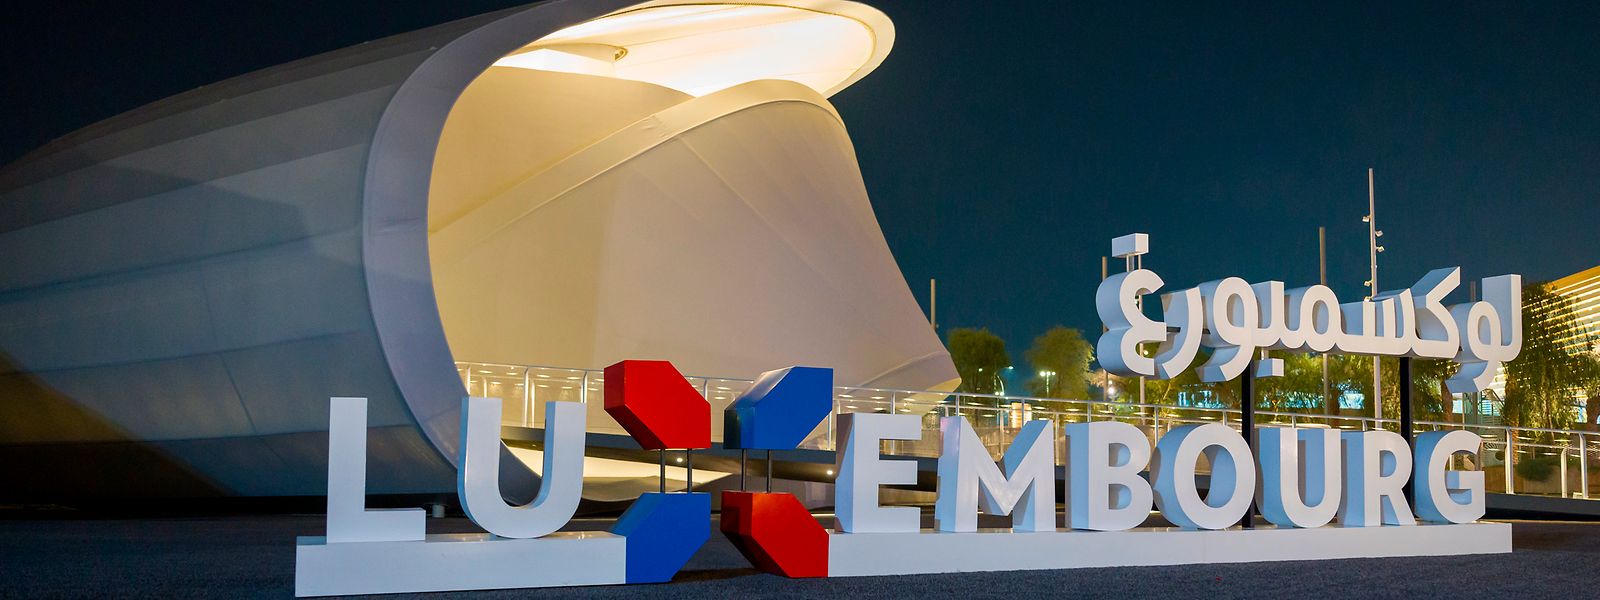 Der Luxemburger Pavillon in Dubai kann jetzt auch von Luxemburg aus besichtigt werden.